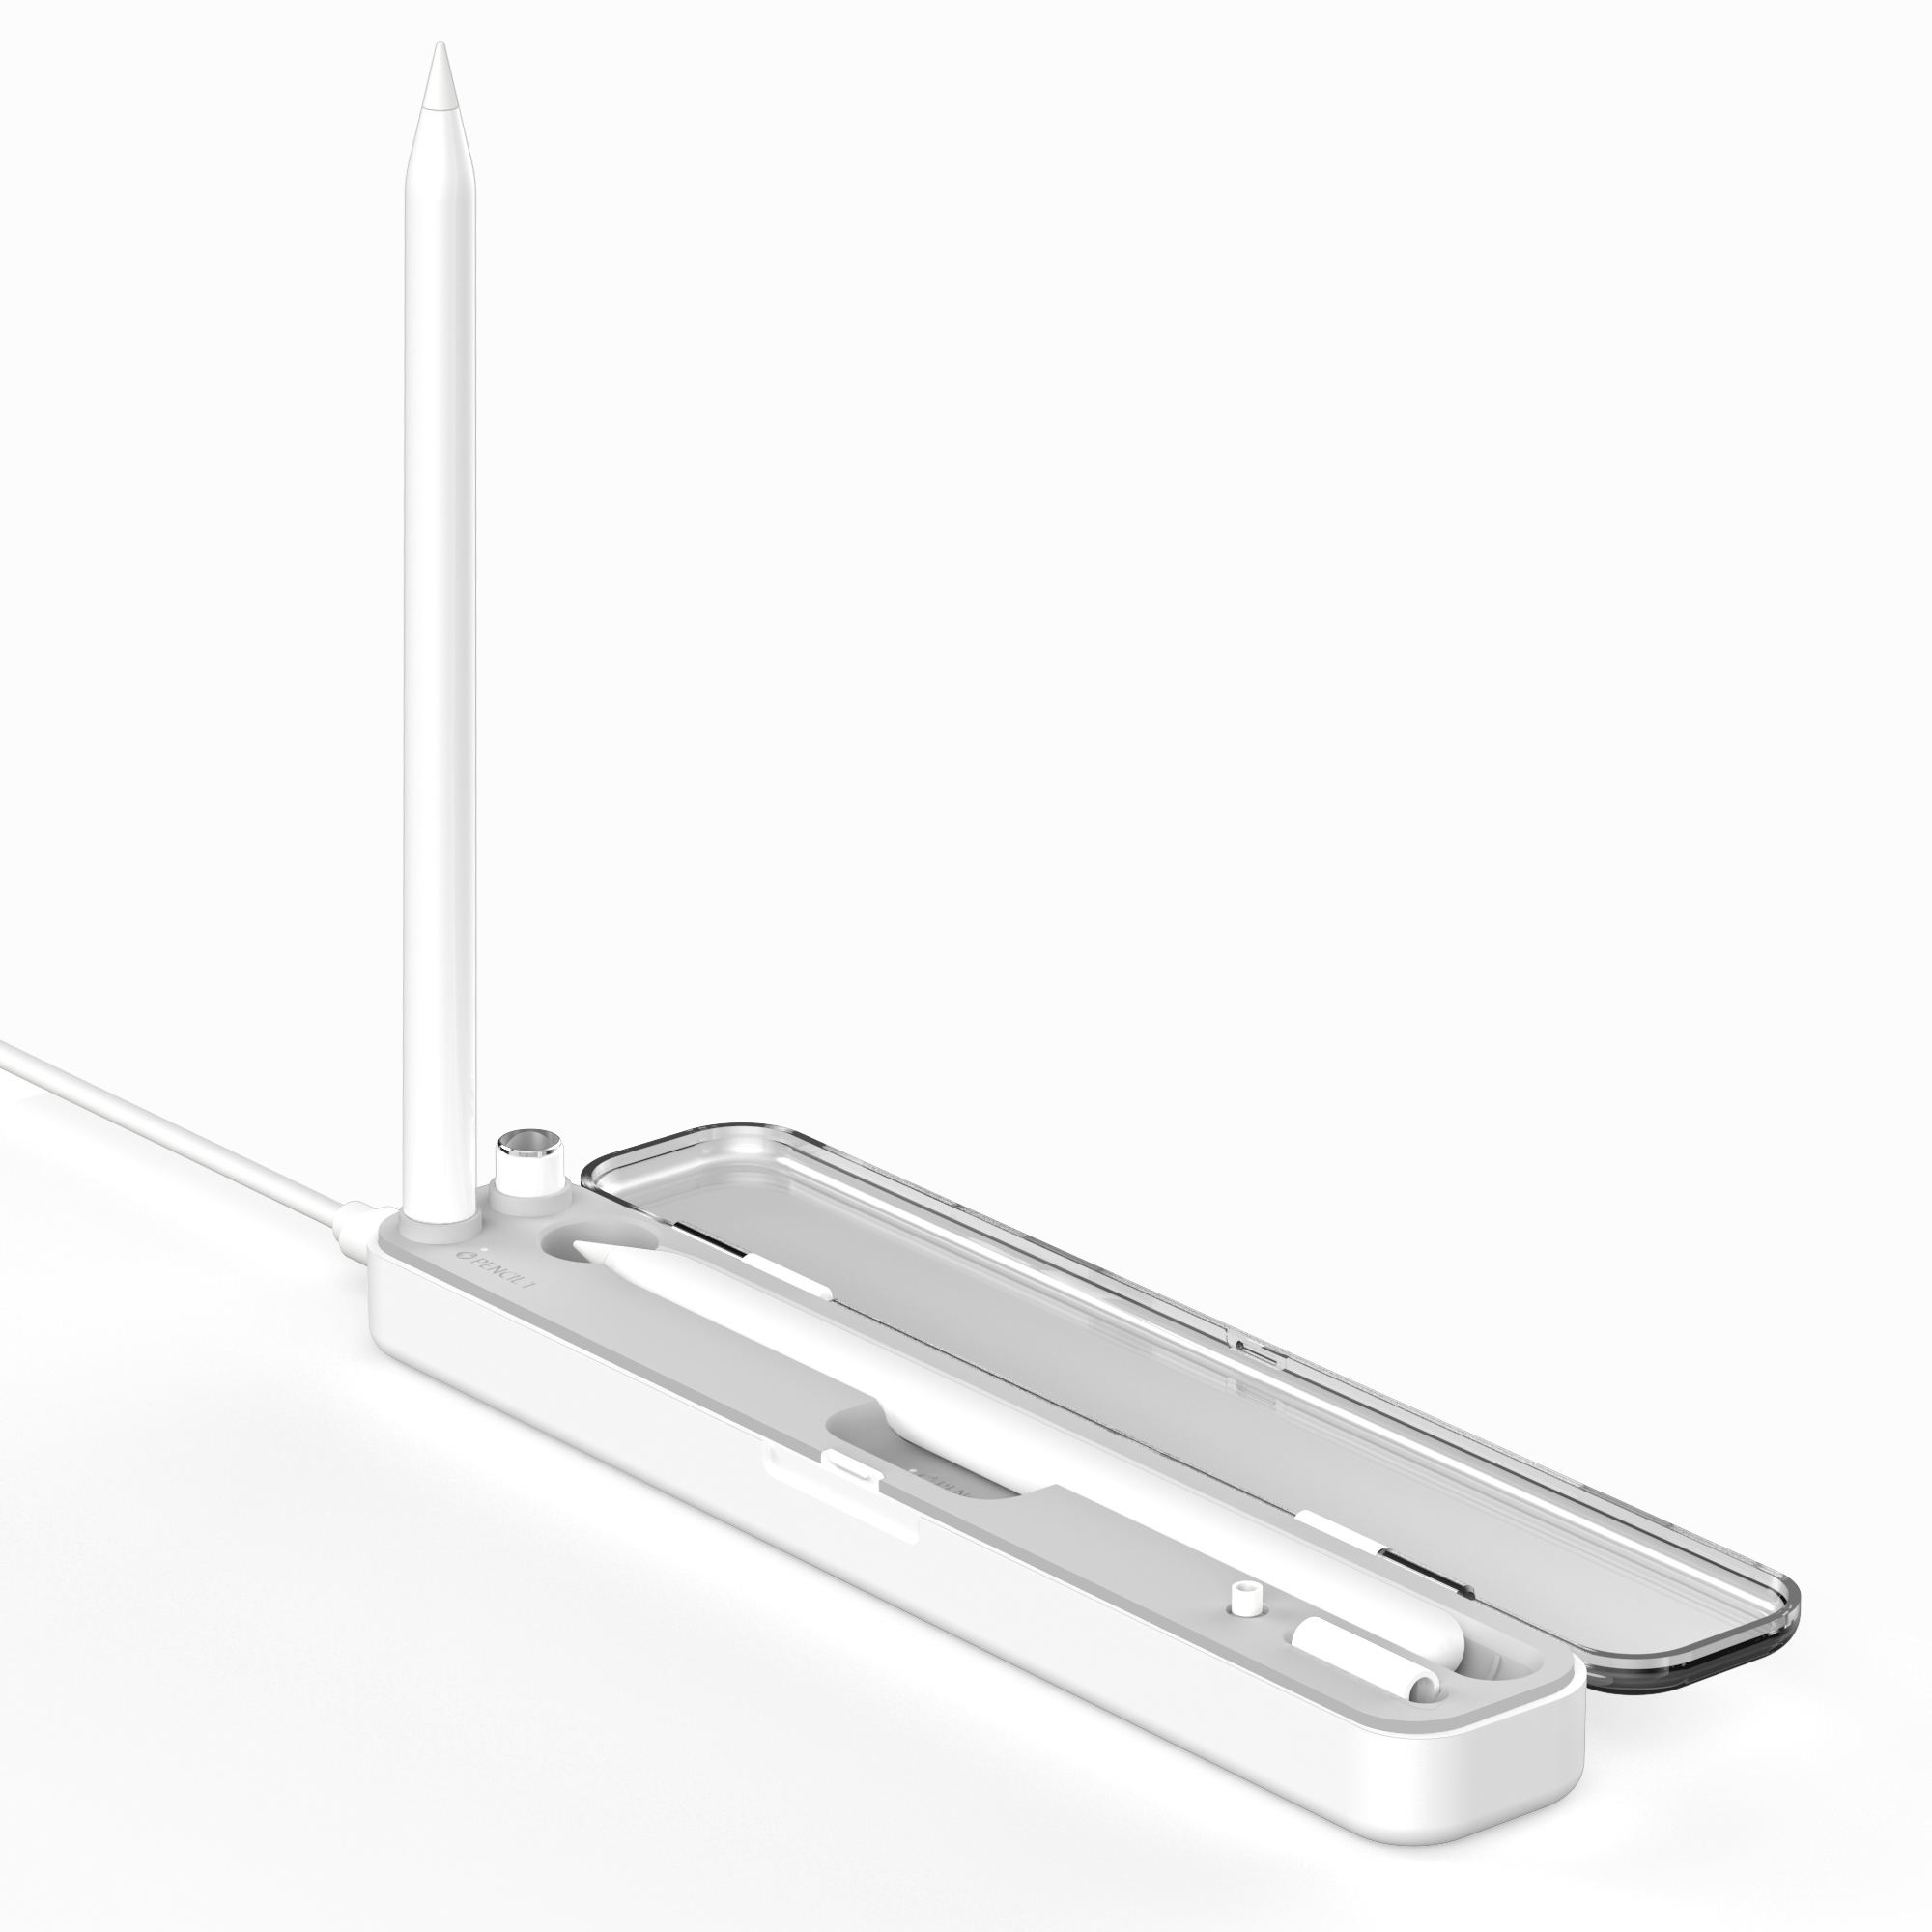 مربع تخزين قلم رصاص Apple الشحن اللاسلكي المغناطيسي للجيل الثاني من قلم الرصاص وحامل الحافظة المدمج لأقلام iPad (MH-D38)